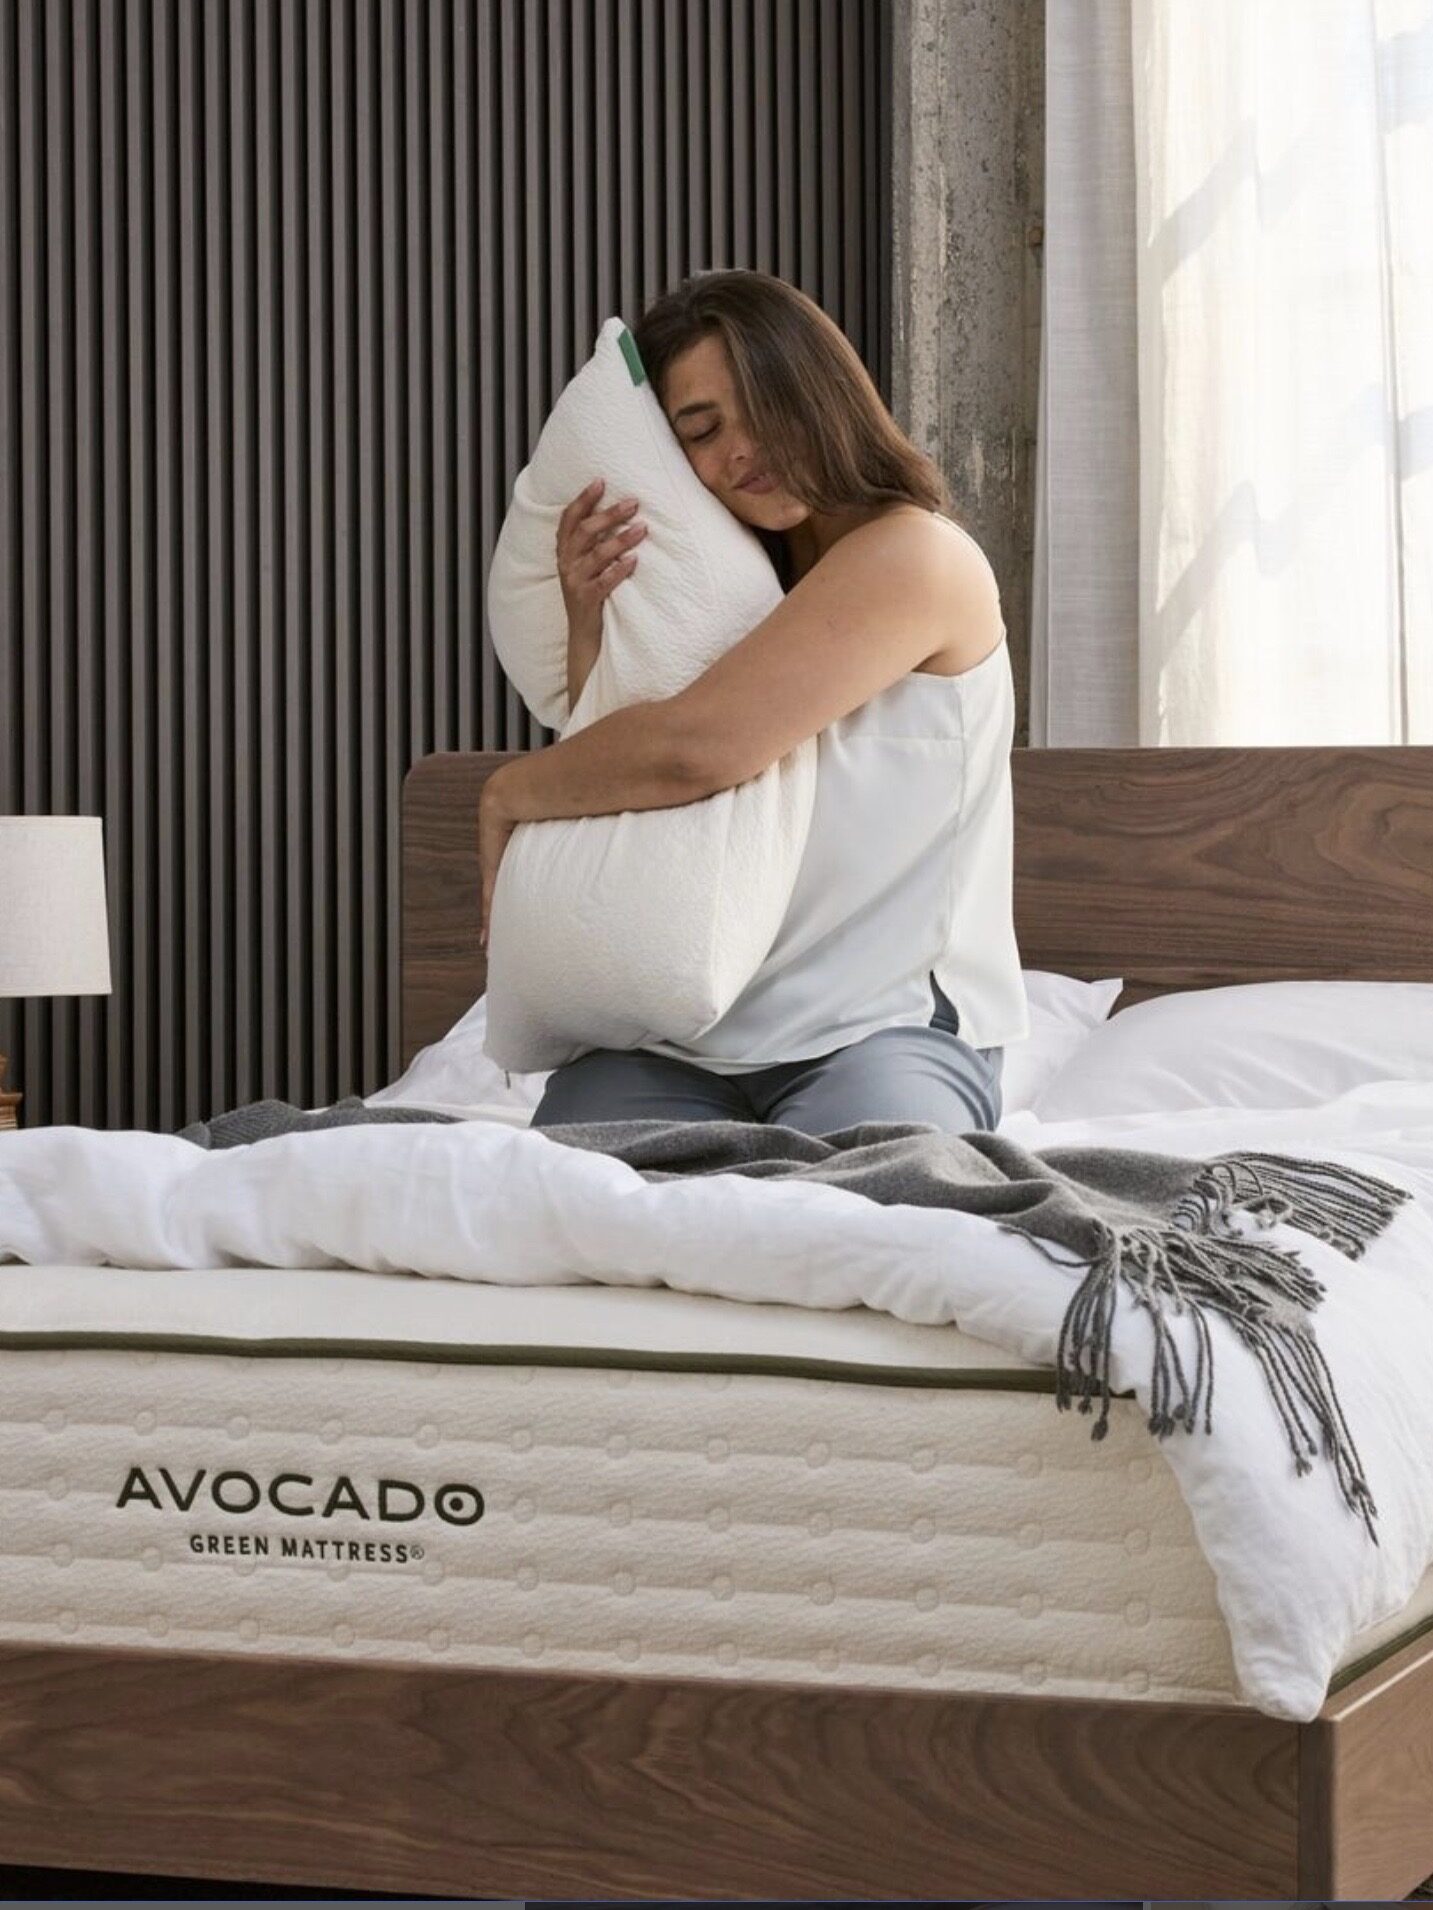 A model hugs a pillow on top of an Avocado Green Mattress